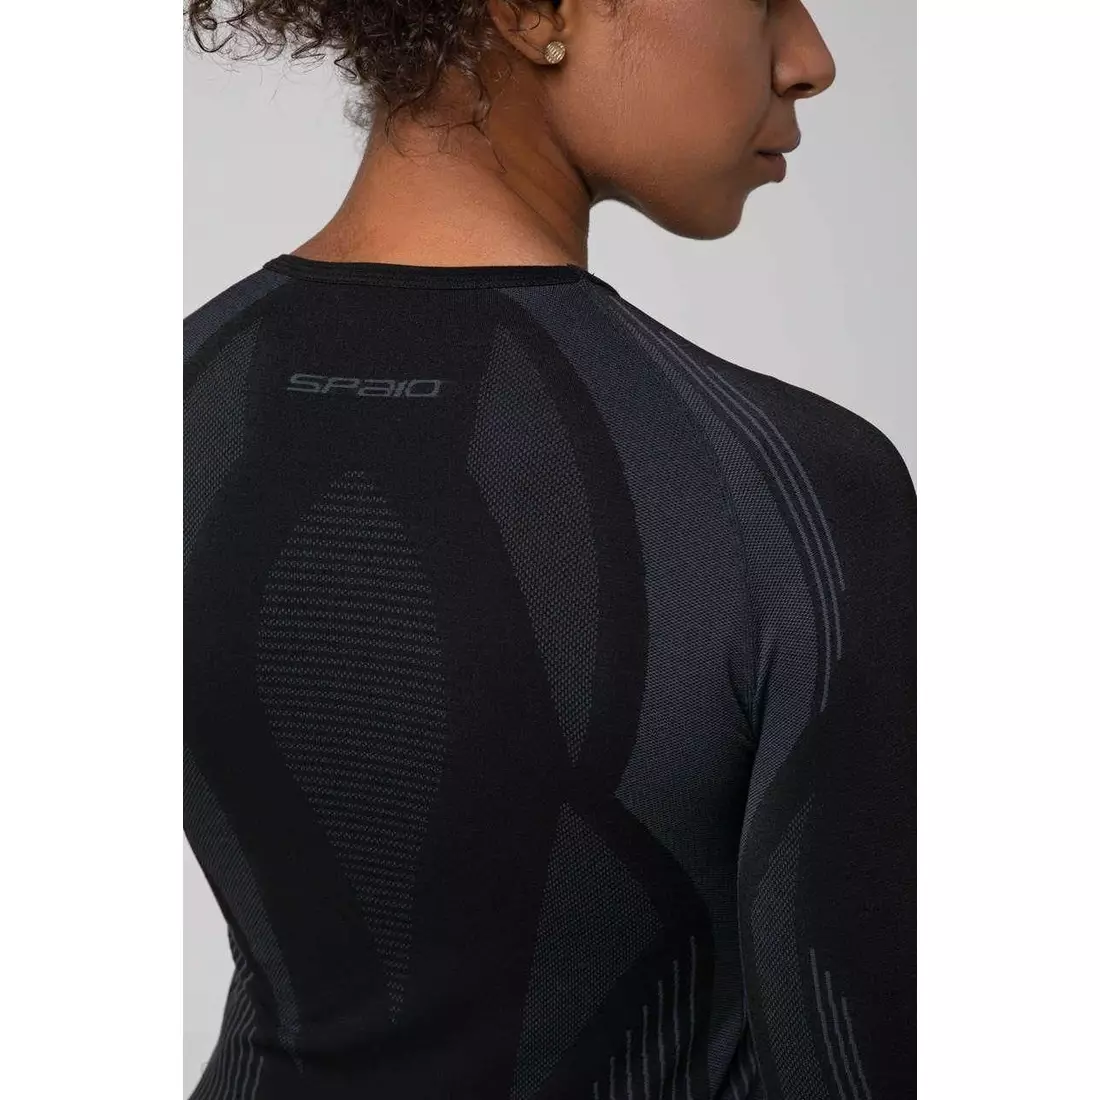 SPAIO lenjerie termoactivă, tricou pentru femei PUTERNIC negru-gri